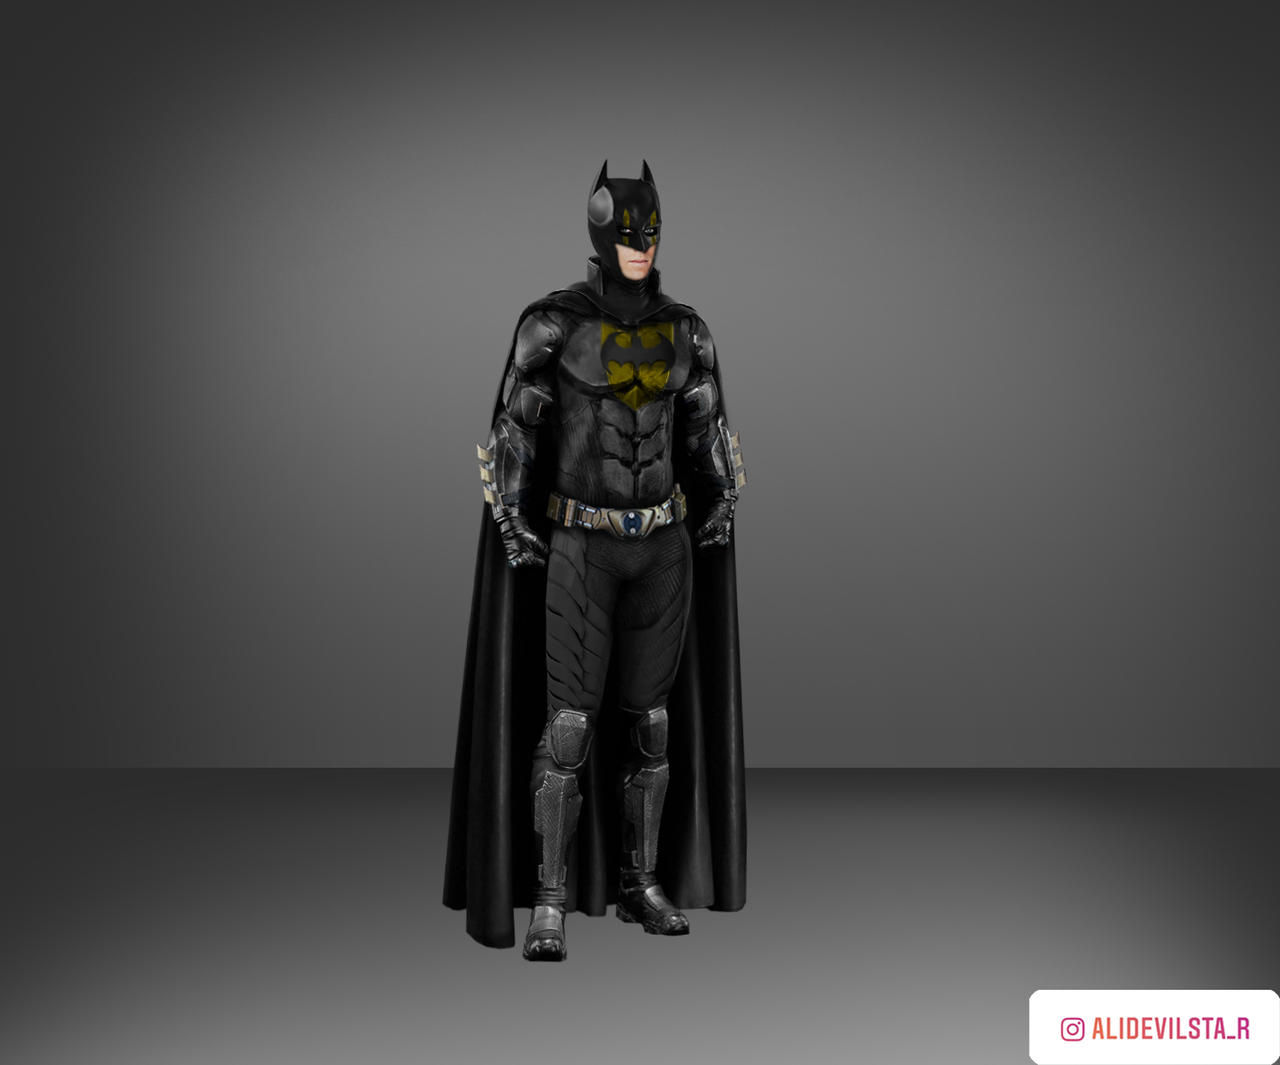 Armie Hammer as Batman by AliDevilSta on DeviantArt